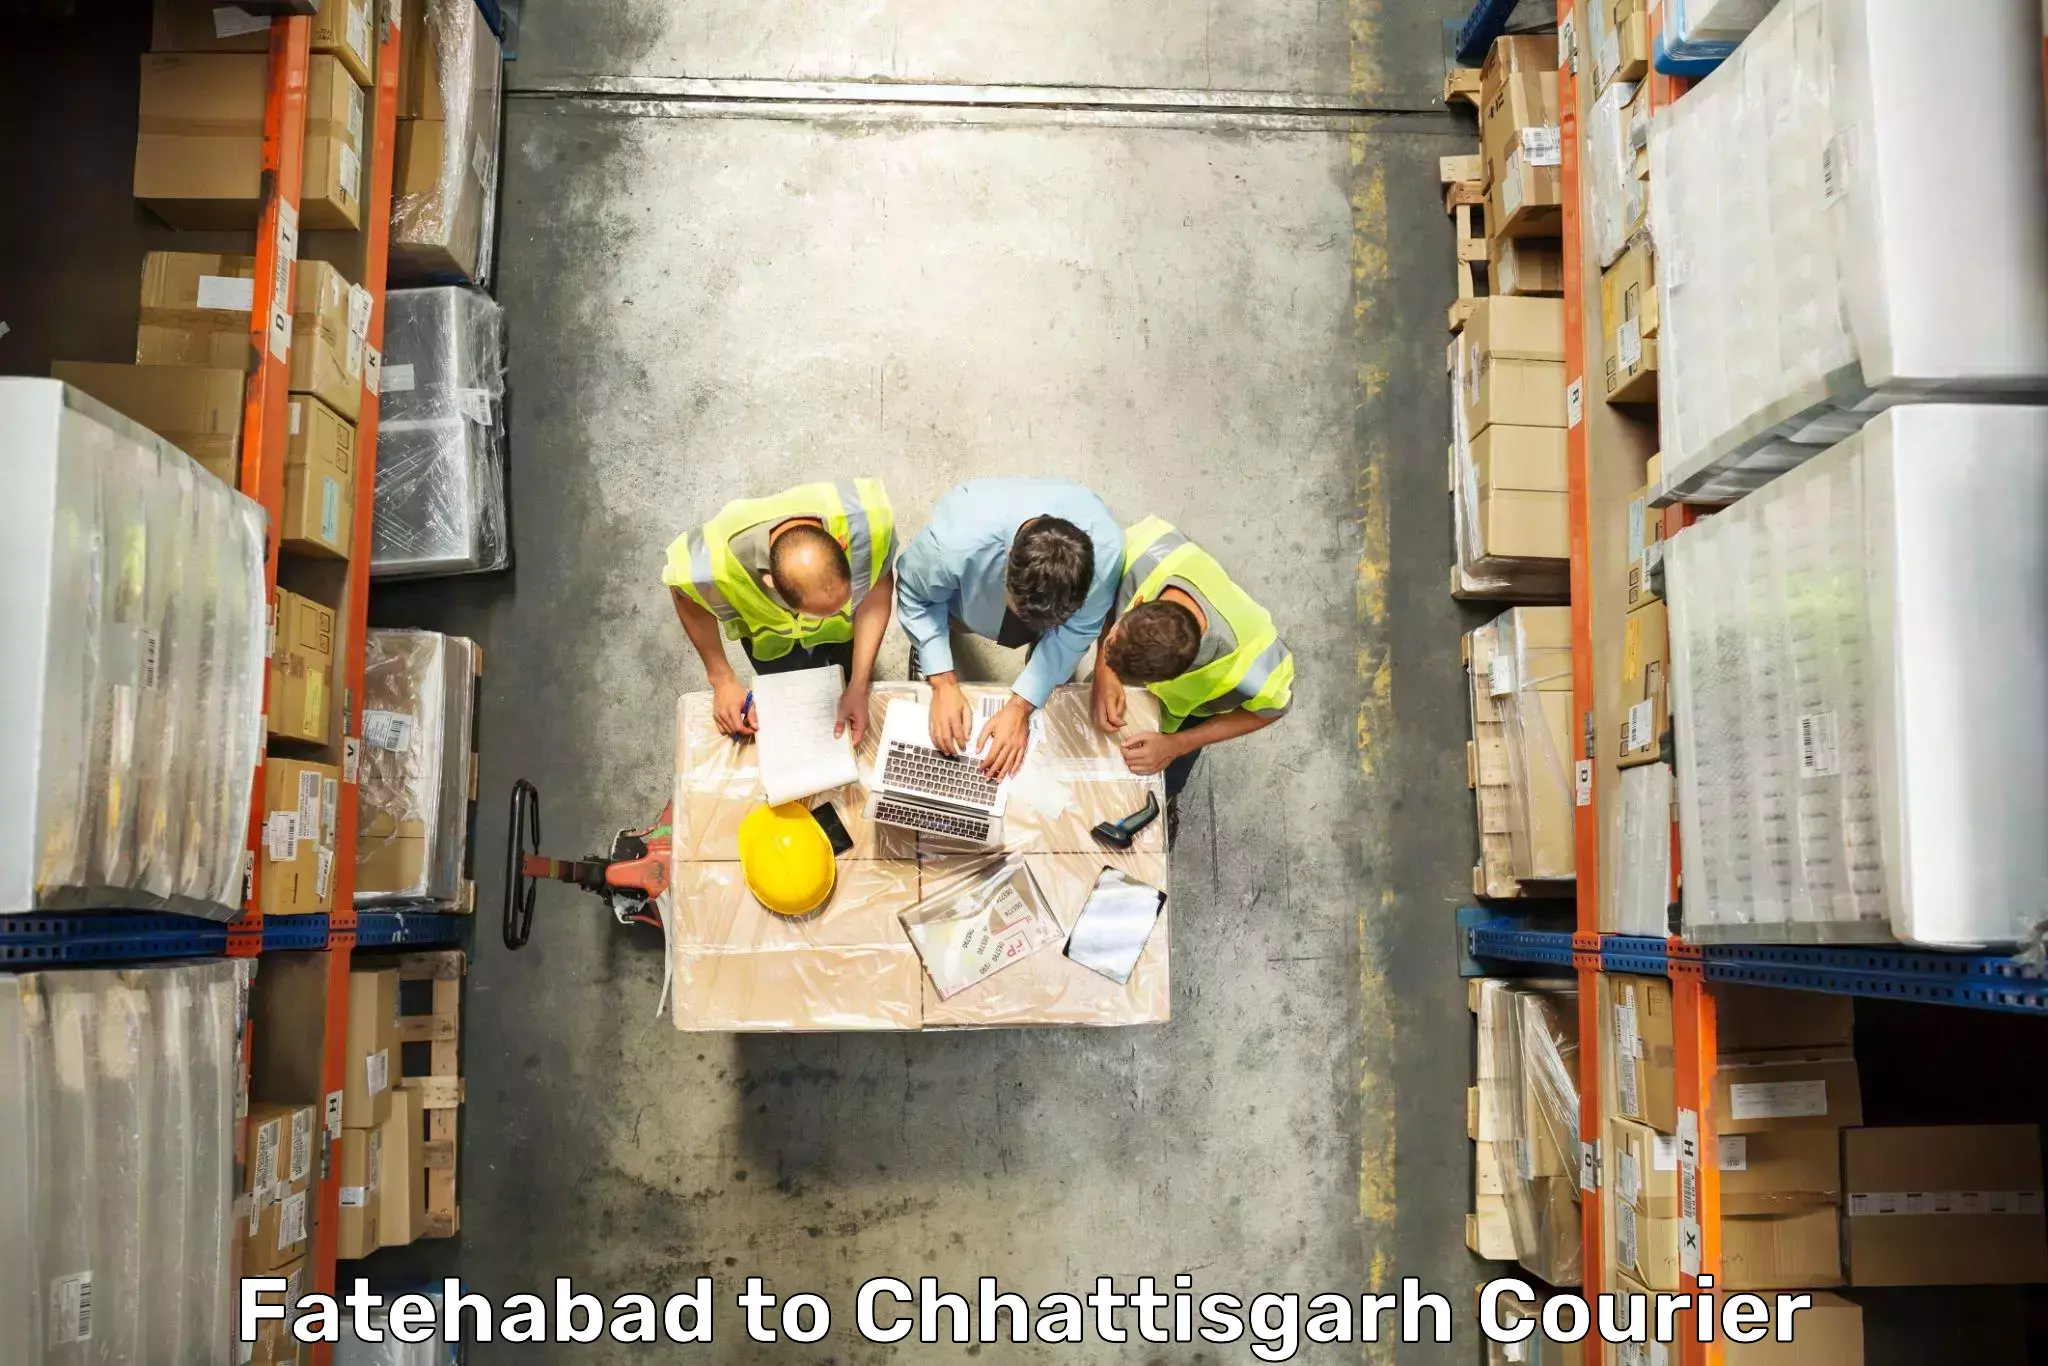 Luggage delivery app Fatehabad to Korea Chhattisgarh